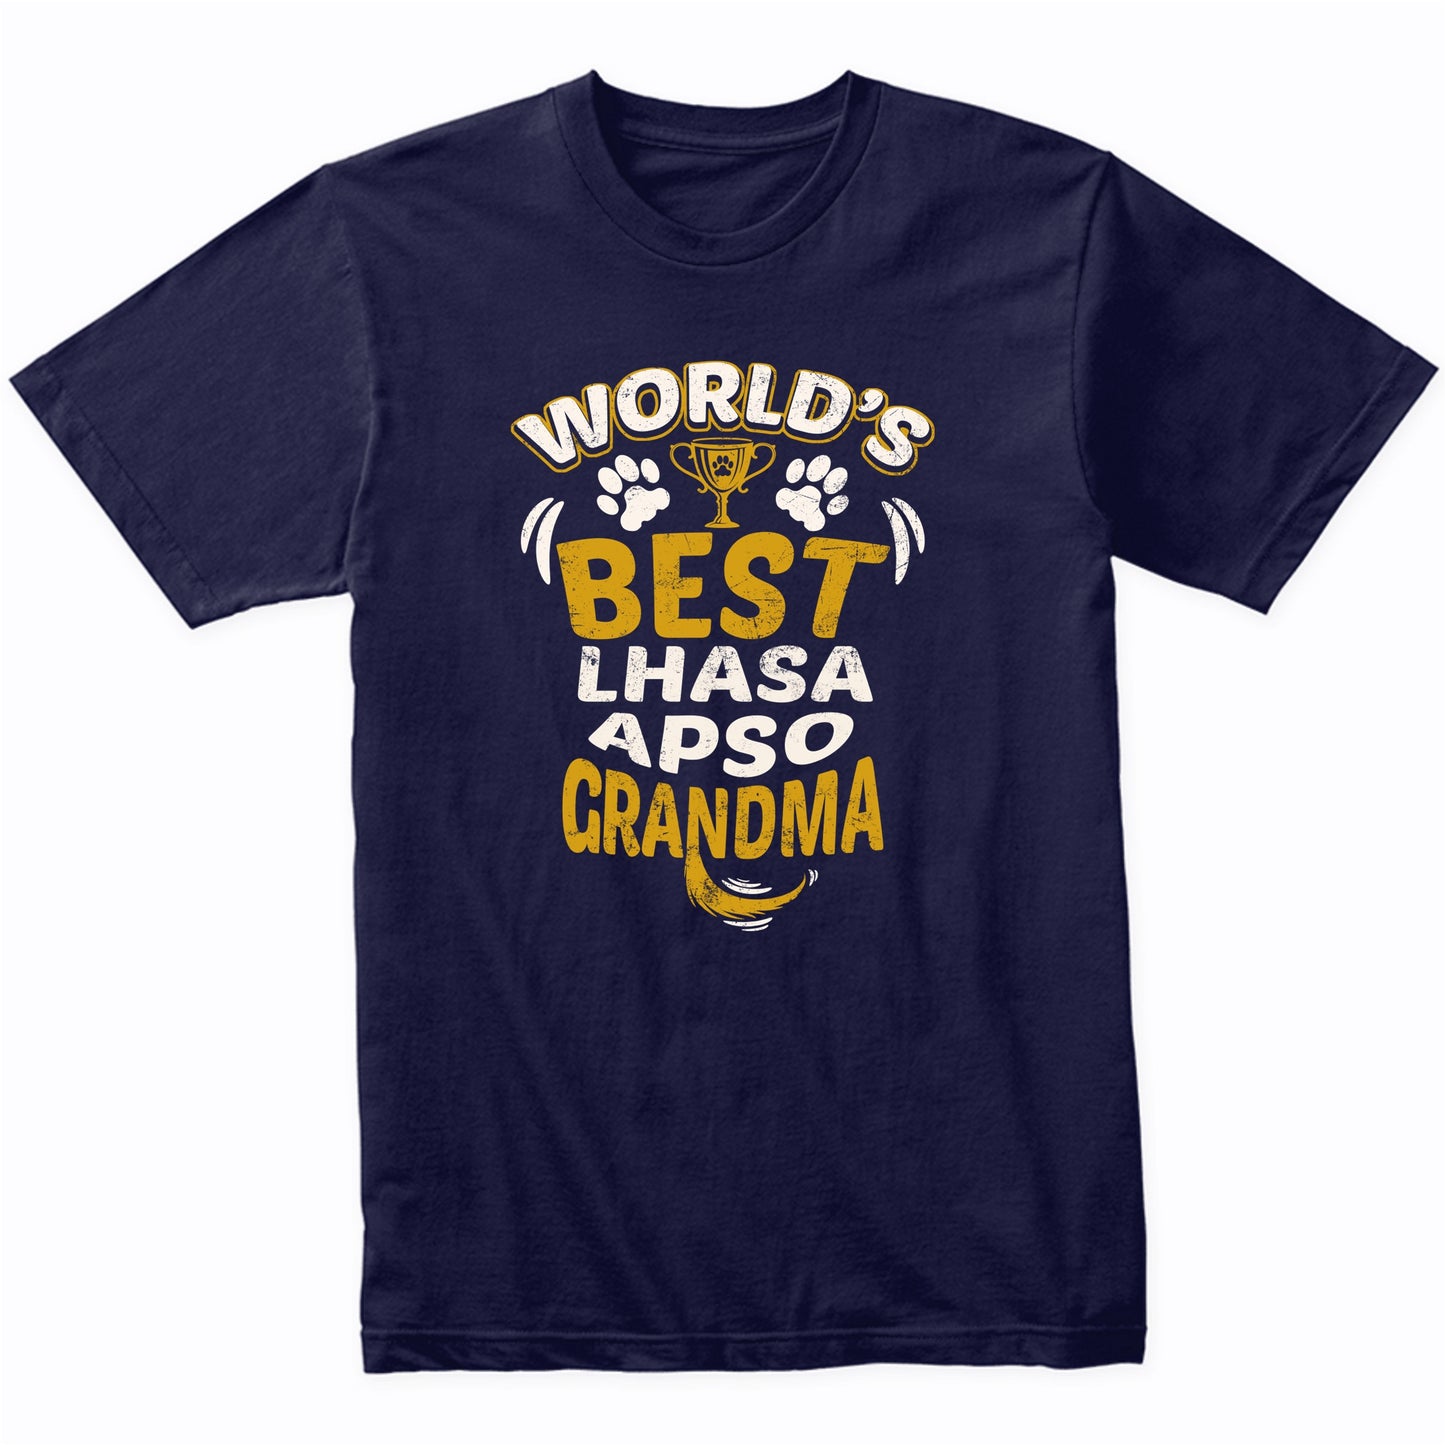 World's Best Lhasa Apso Grandma Graphic T-Shirt